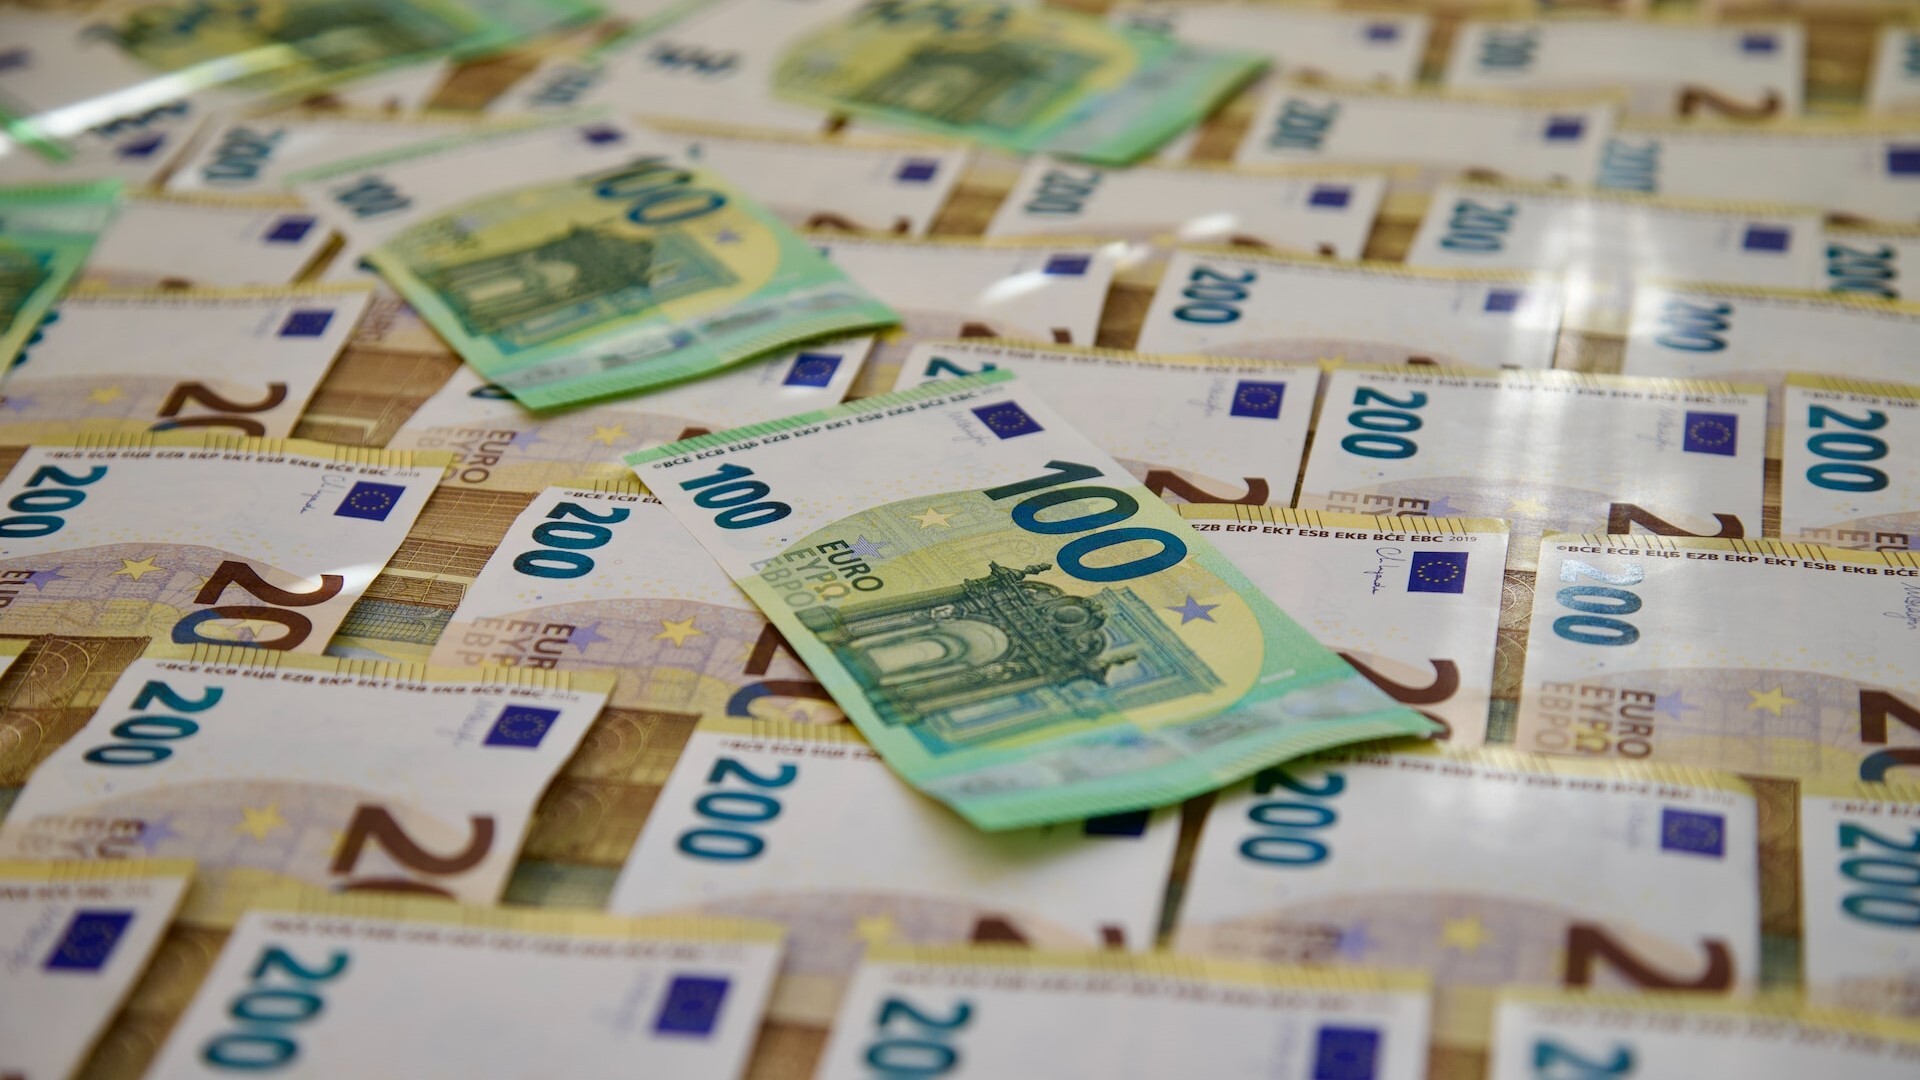 Čistý zisk bánk na Slovensku vlani vzrástol o 46 percent. Na 1,2 miliardy eur